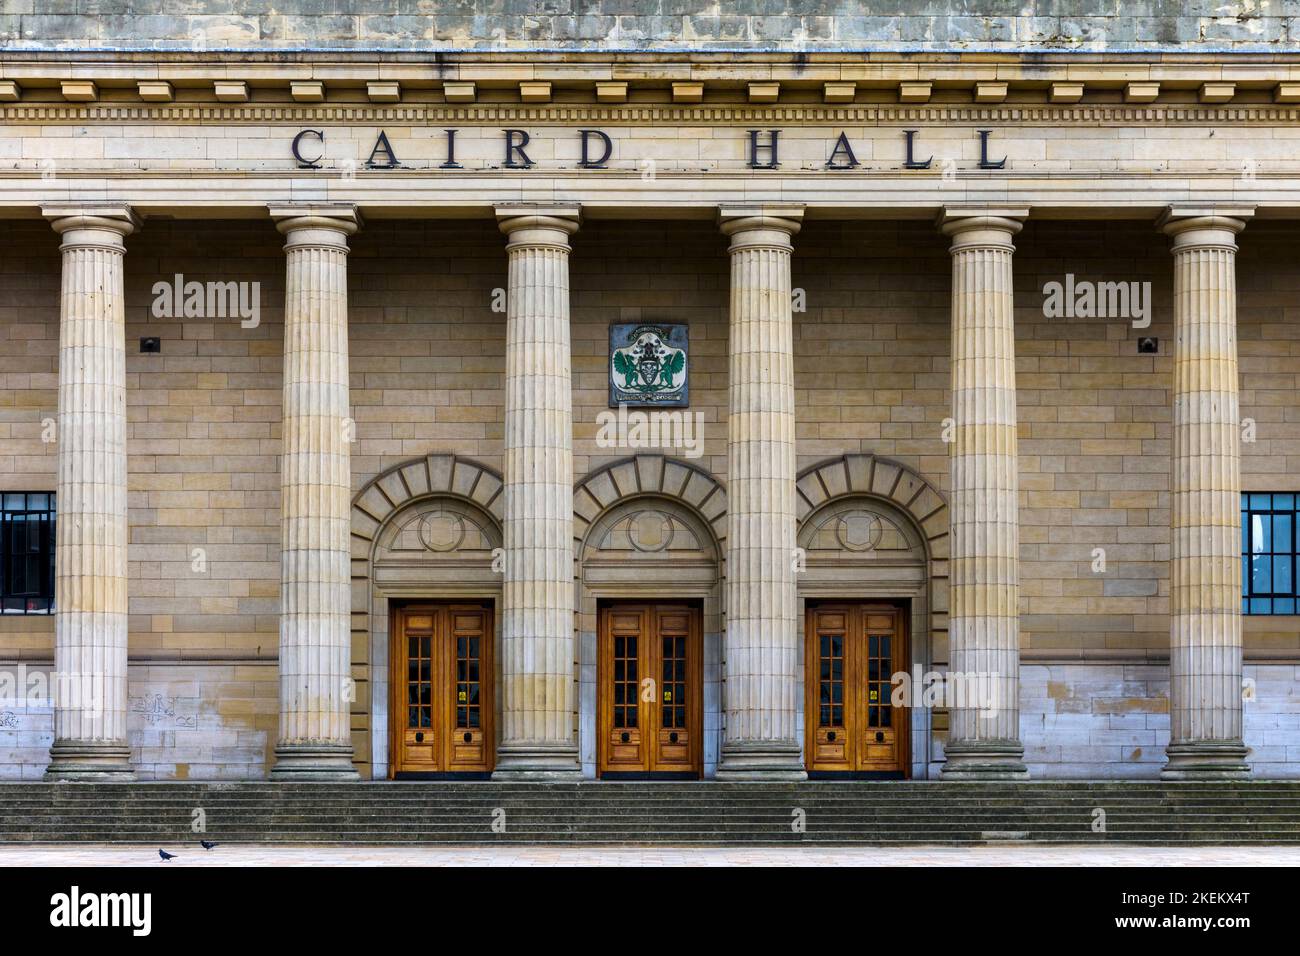 Eintritt zur Caird Hall, City Square, Dundee, Schottland, Großbritannien Stockfoto